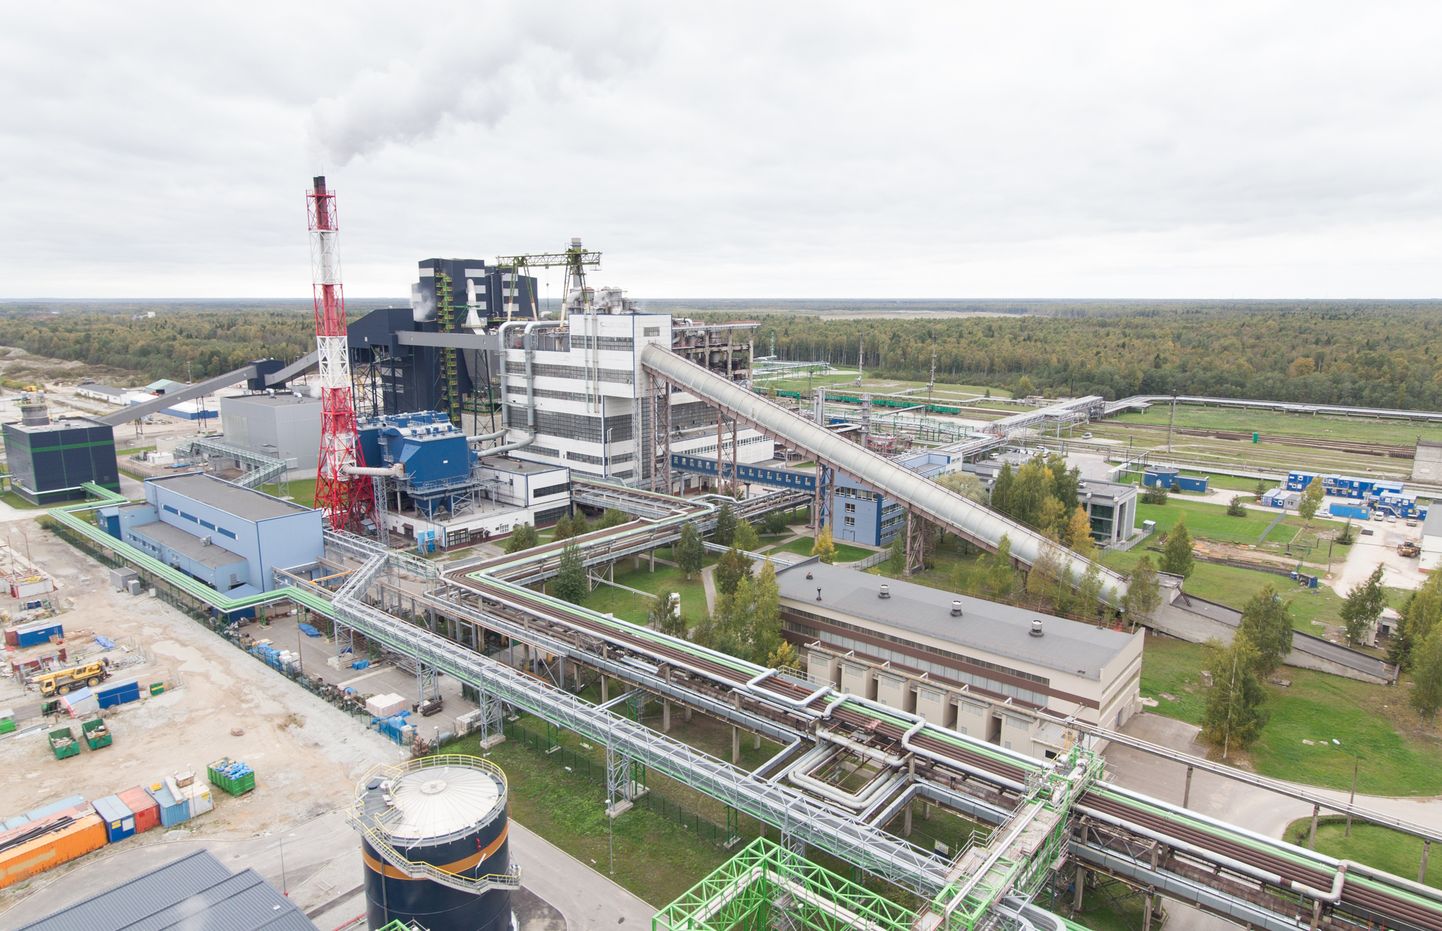 Suur osa Eesti põlevkivitööstusest on koondunud Narva lähedale Auveresse, kus asuvad nii õlitehased kui elektrijaamad. MATTI KÄMÄRÄ